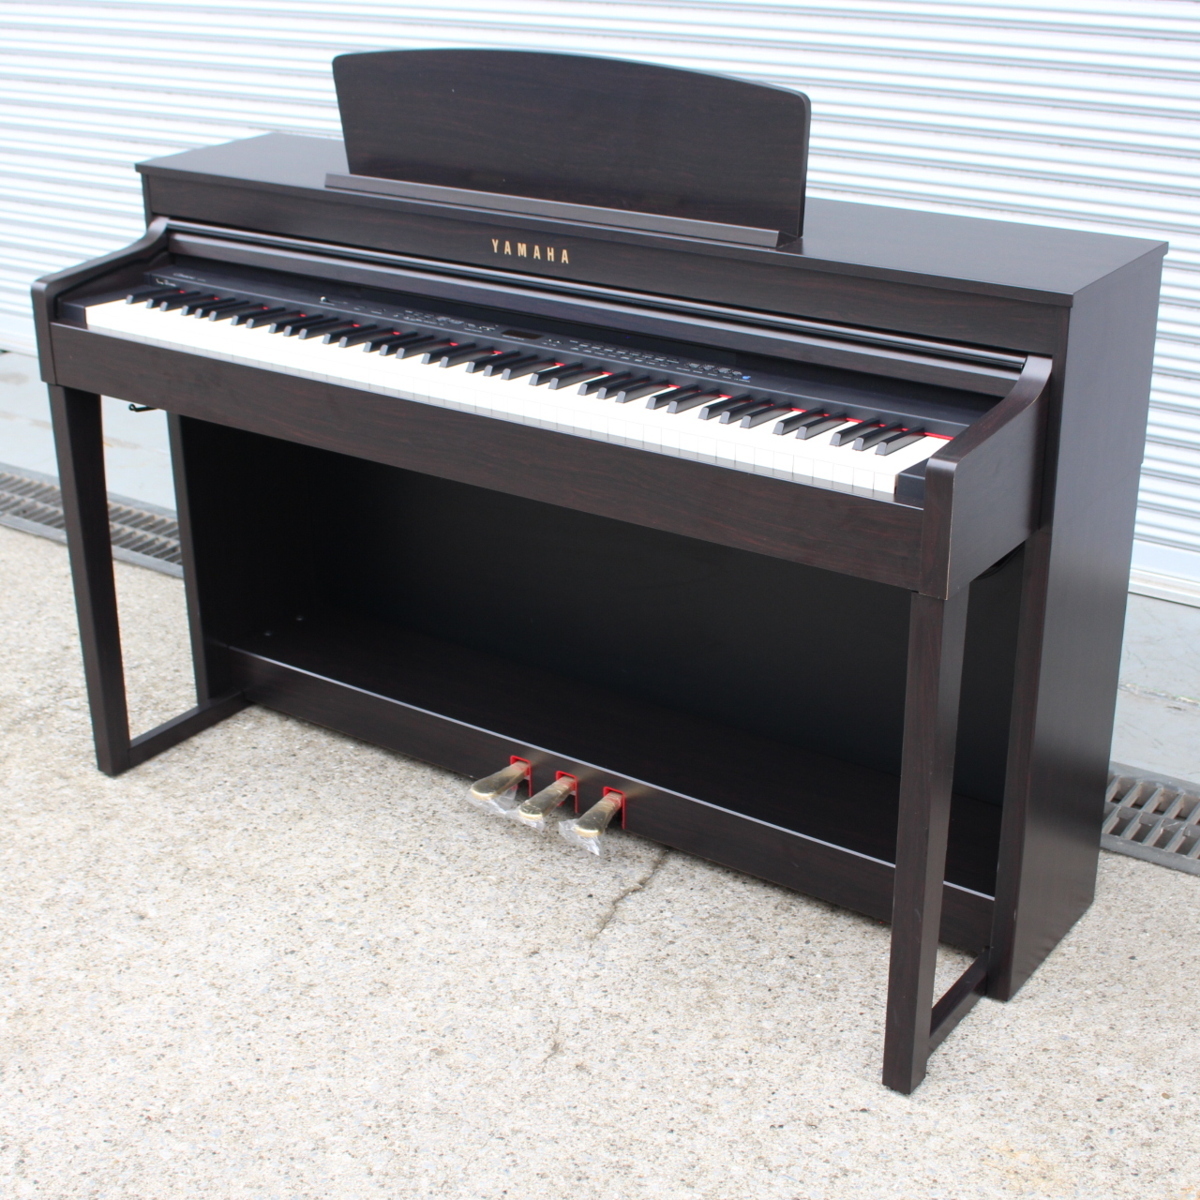 東京都豊島区にて ヤマハ 電子ピアノ CLP-470R 2014年製 を出張買取させて頂きました。